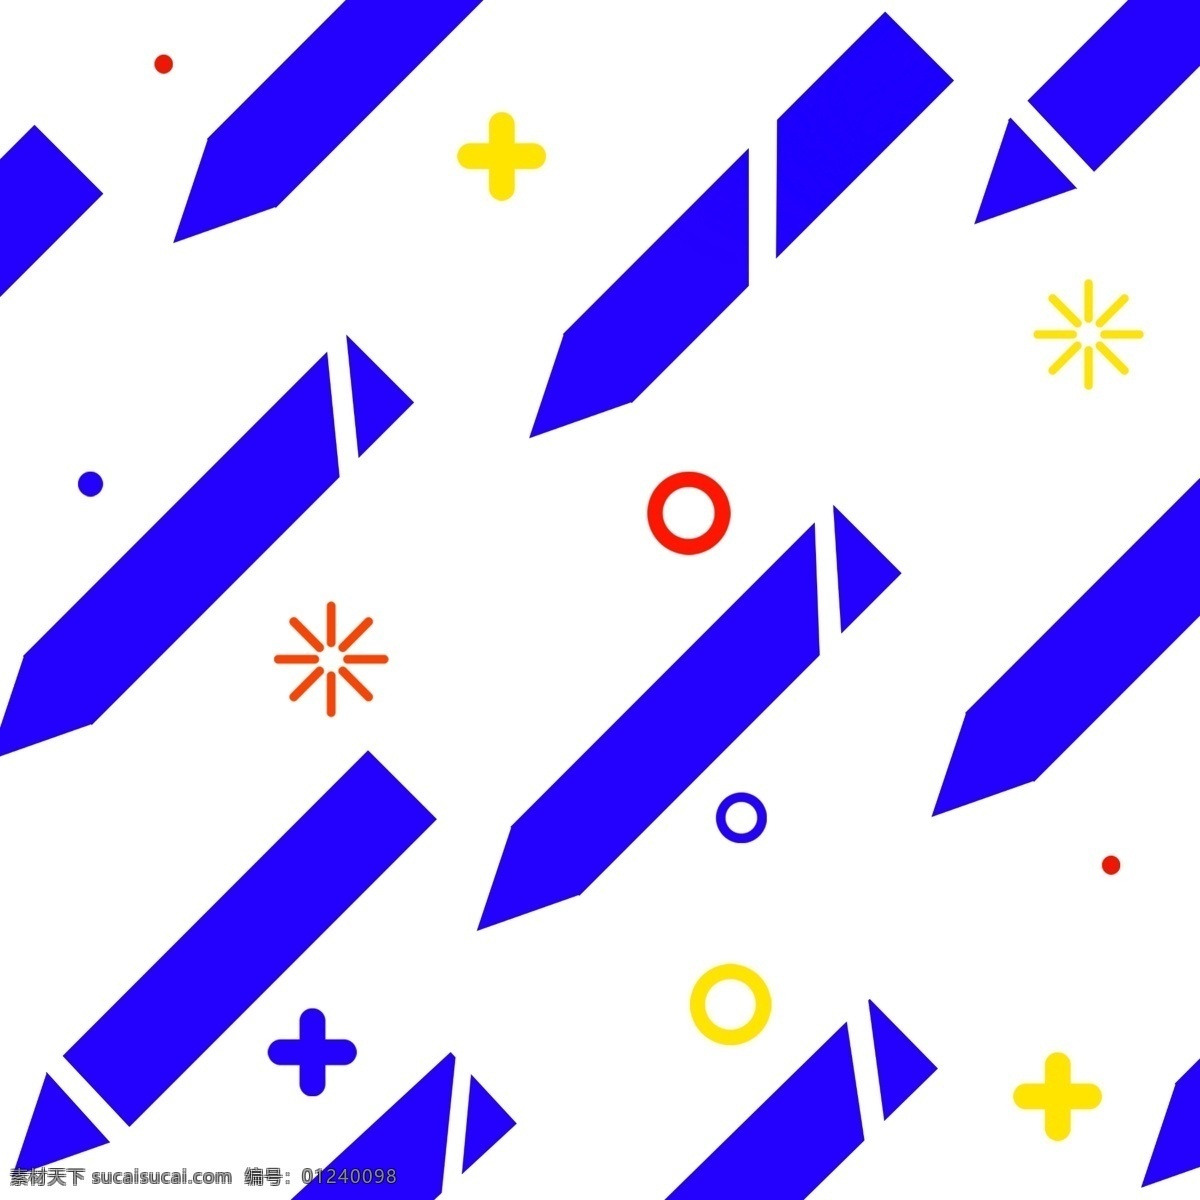 蓝色 三角形 漂浮 箭头 蓝色三角形 圆形 黄色小星星 圆圈 纹理 长方形箭头 多彩 演示文稿背景